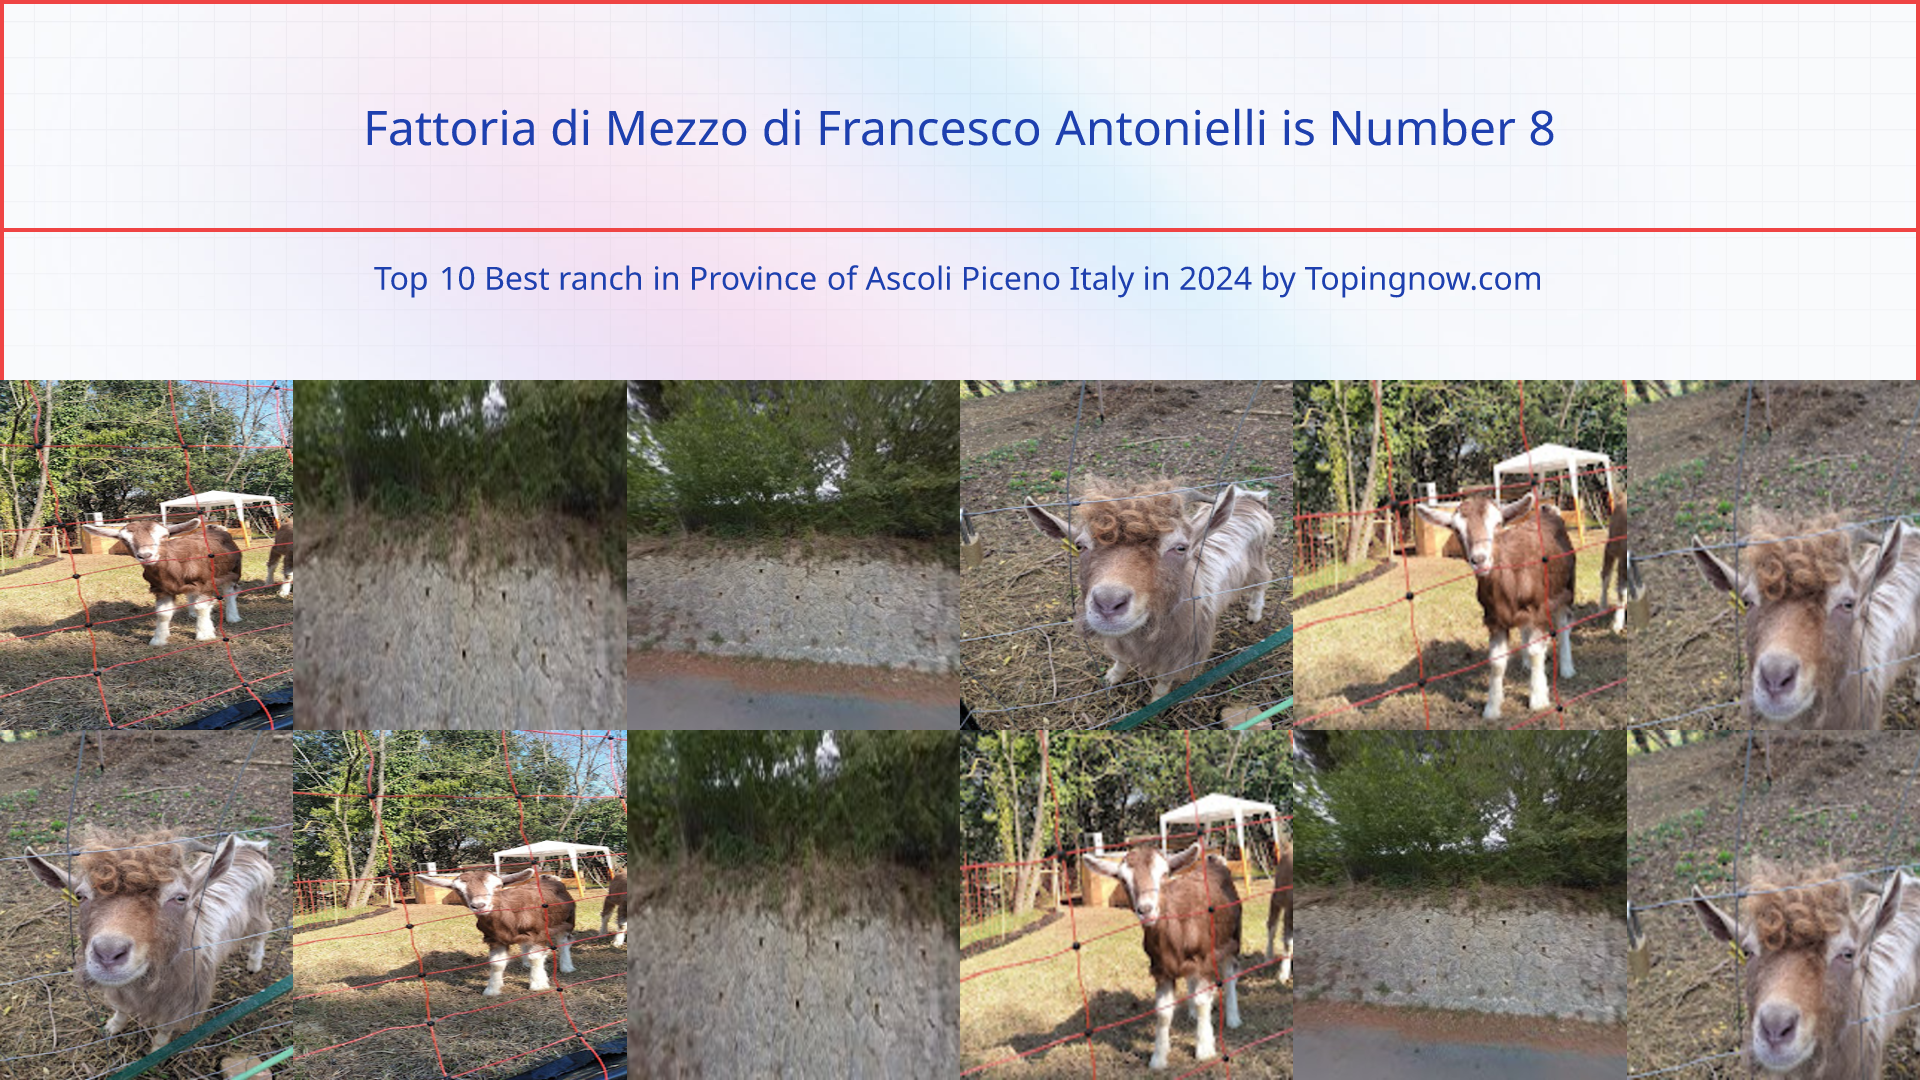 Fattoria di Mezzo di Francesco Antonielli: Top 10 Best ranch in Province of Ascoli Piceno Italy in 2024